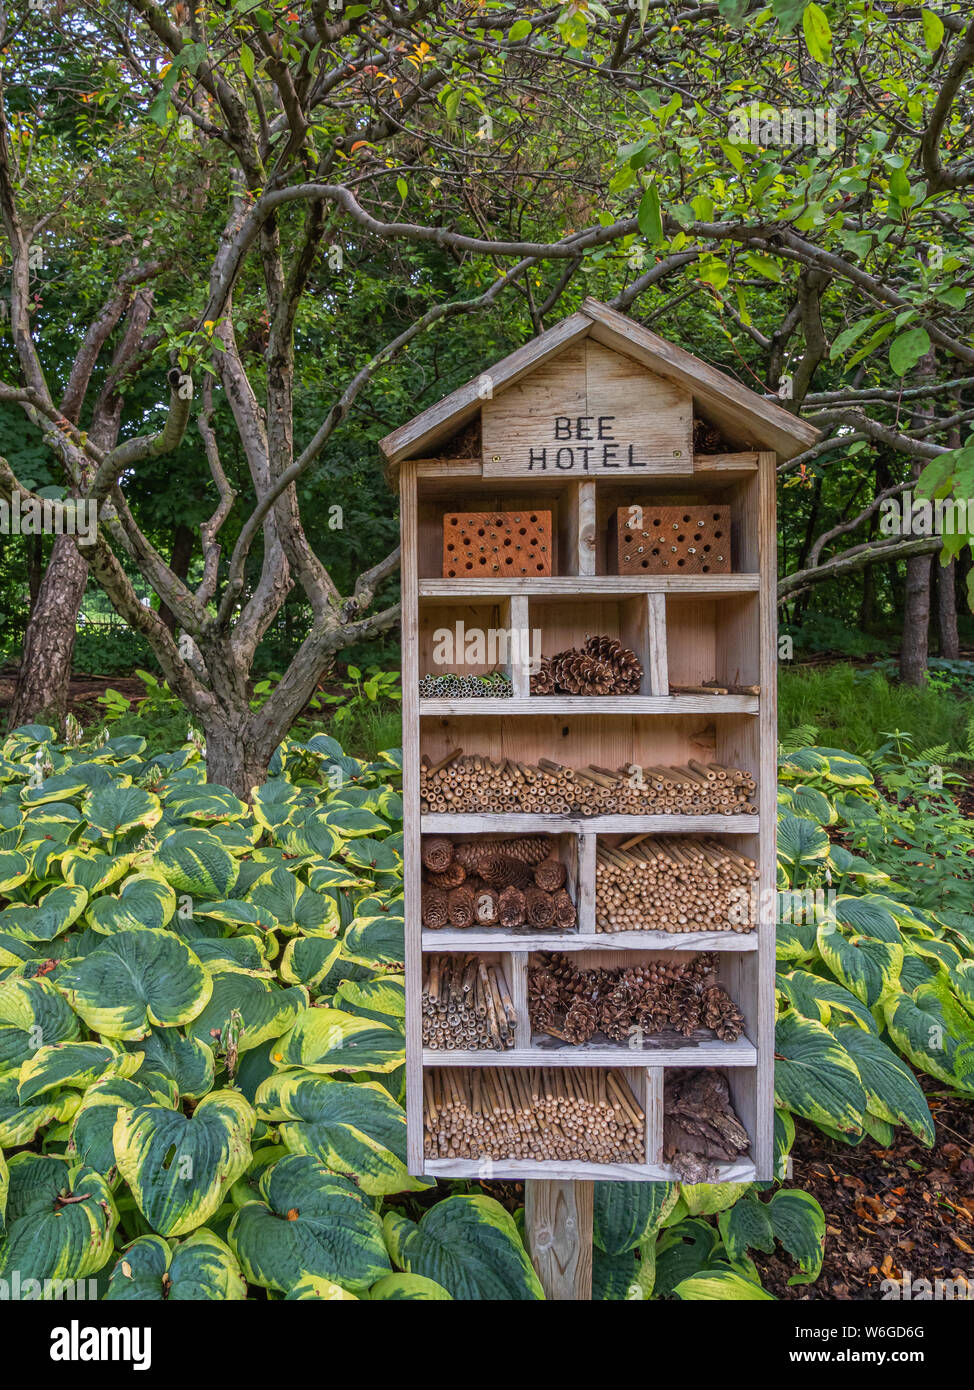 Un hotel", "abeja de madera con tubos y materiales naturales a la vivienda de abejas y de otros polinizadores en un jardín con verde y amarillo hostas y árboles pequeños Foto de stock